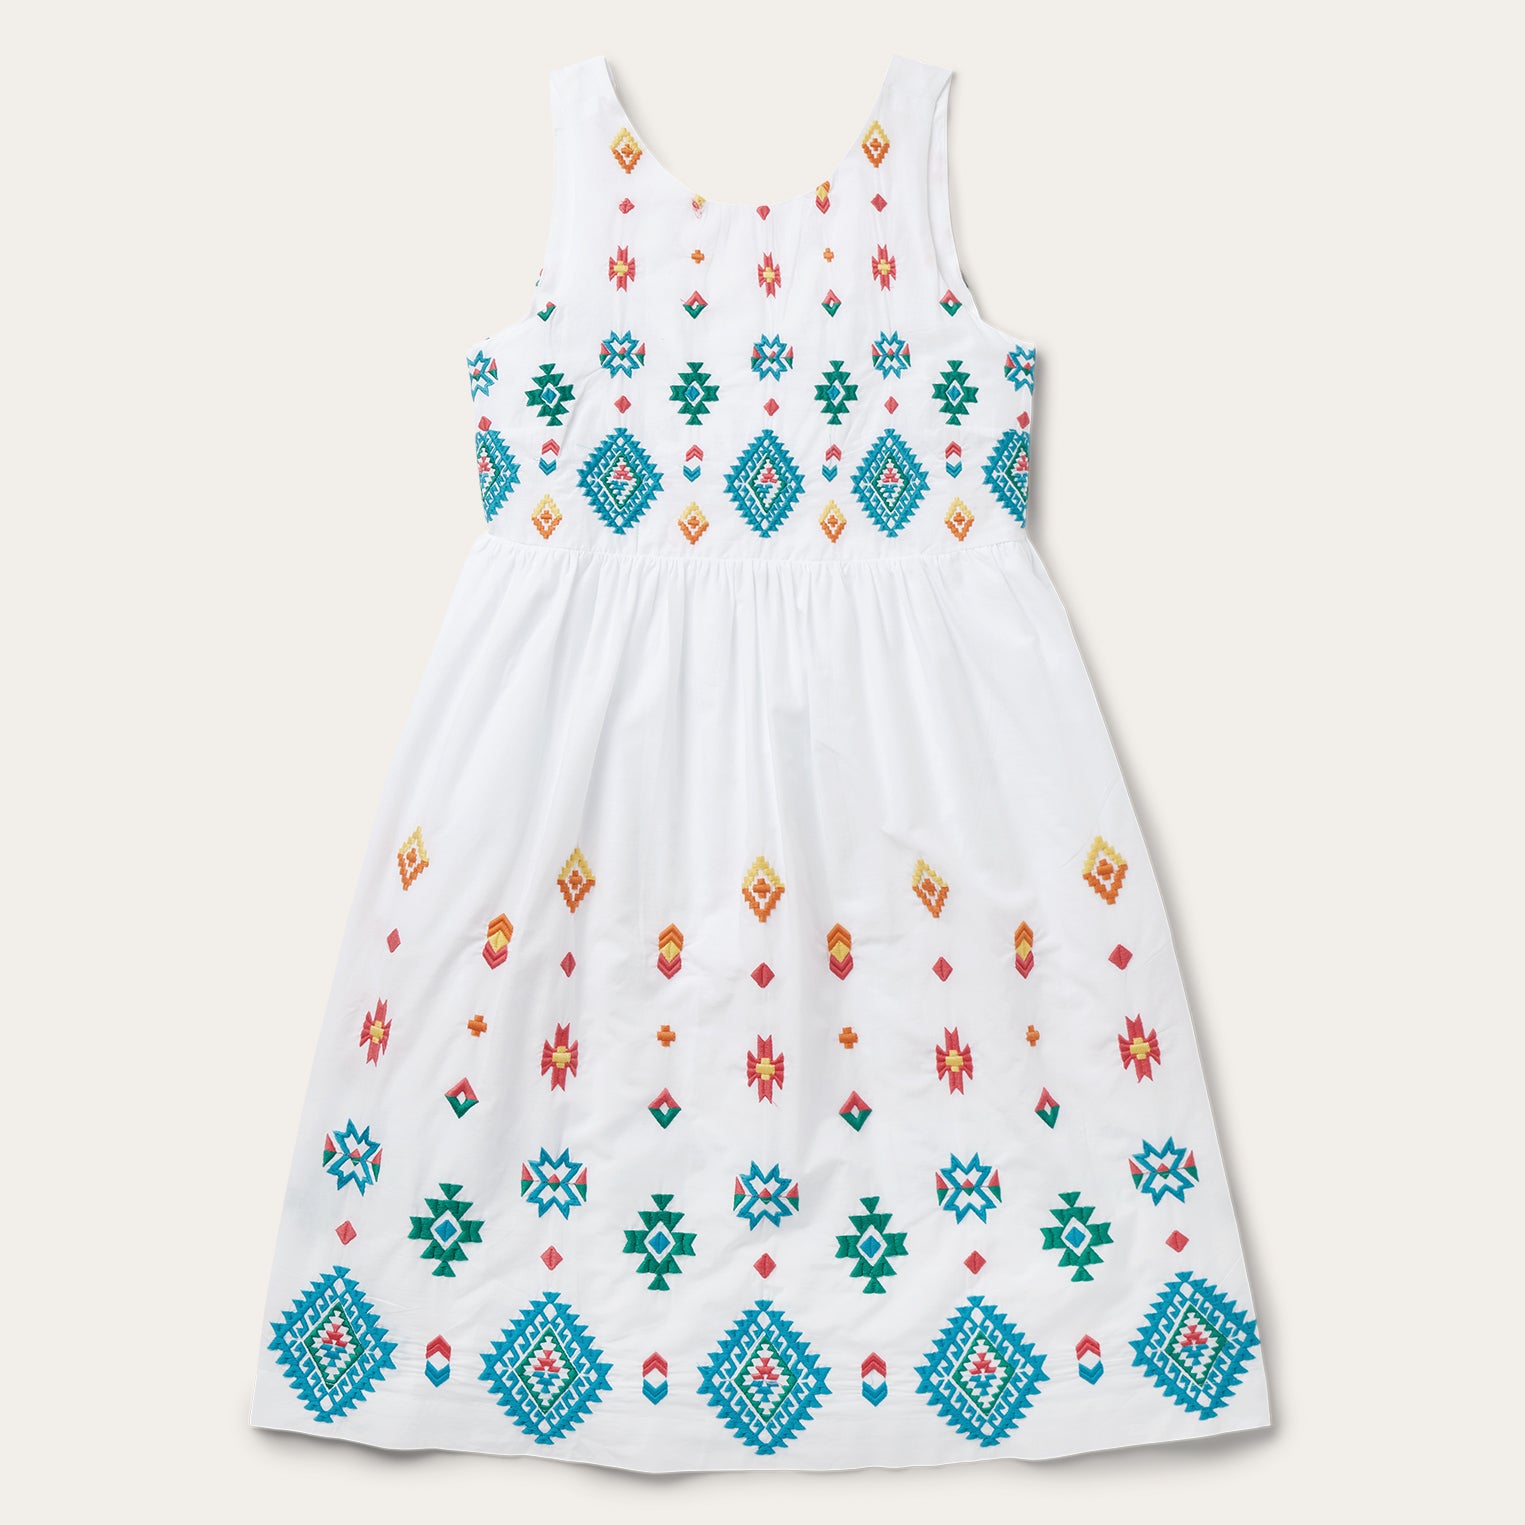 Bright Schiffli Embroidered White Cotton Lawn Dress